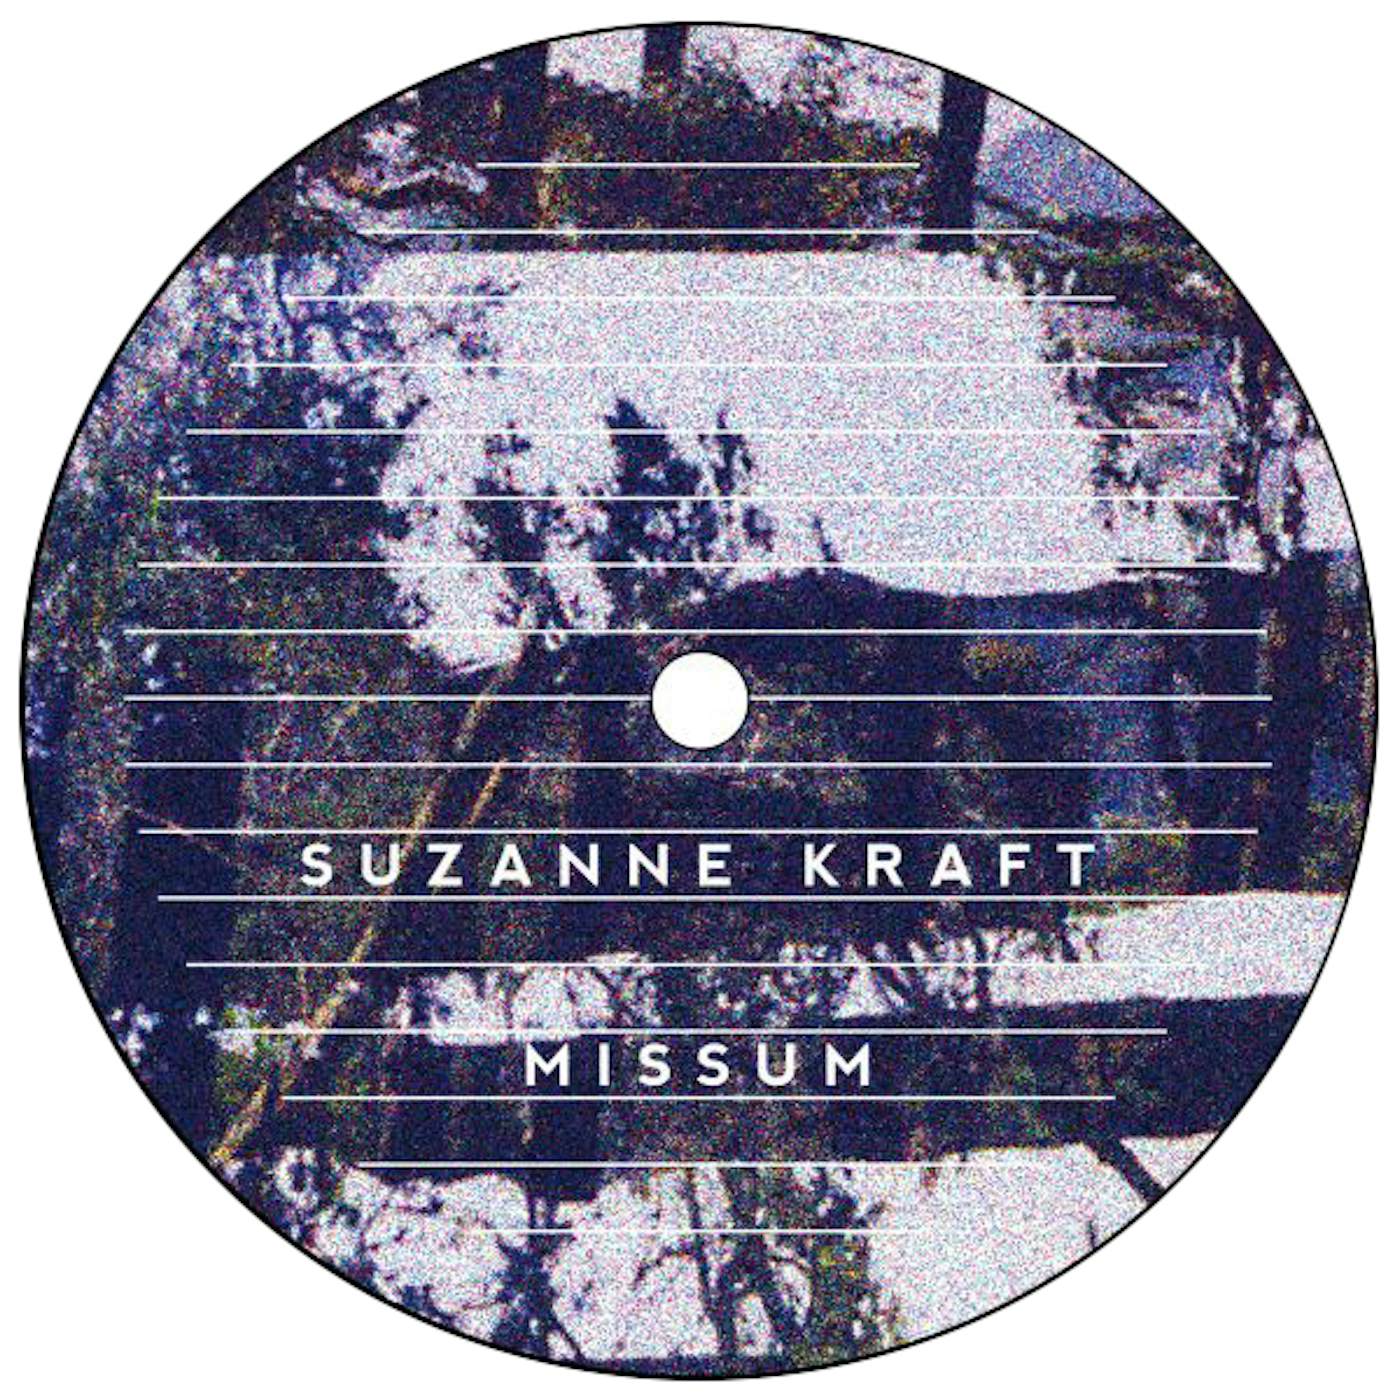 Suzanne Kraft Missum Vinyl Record